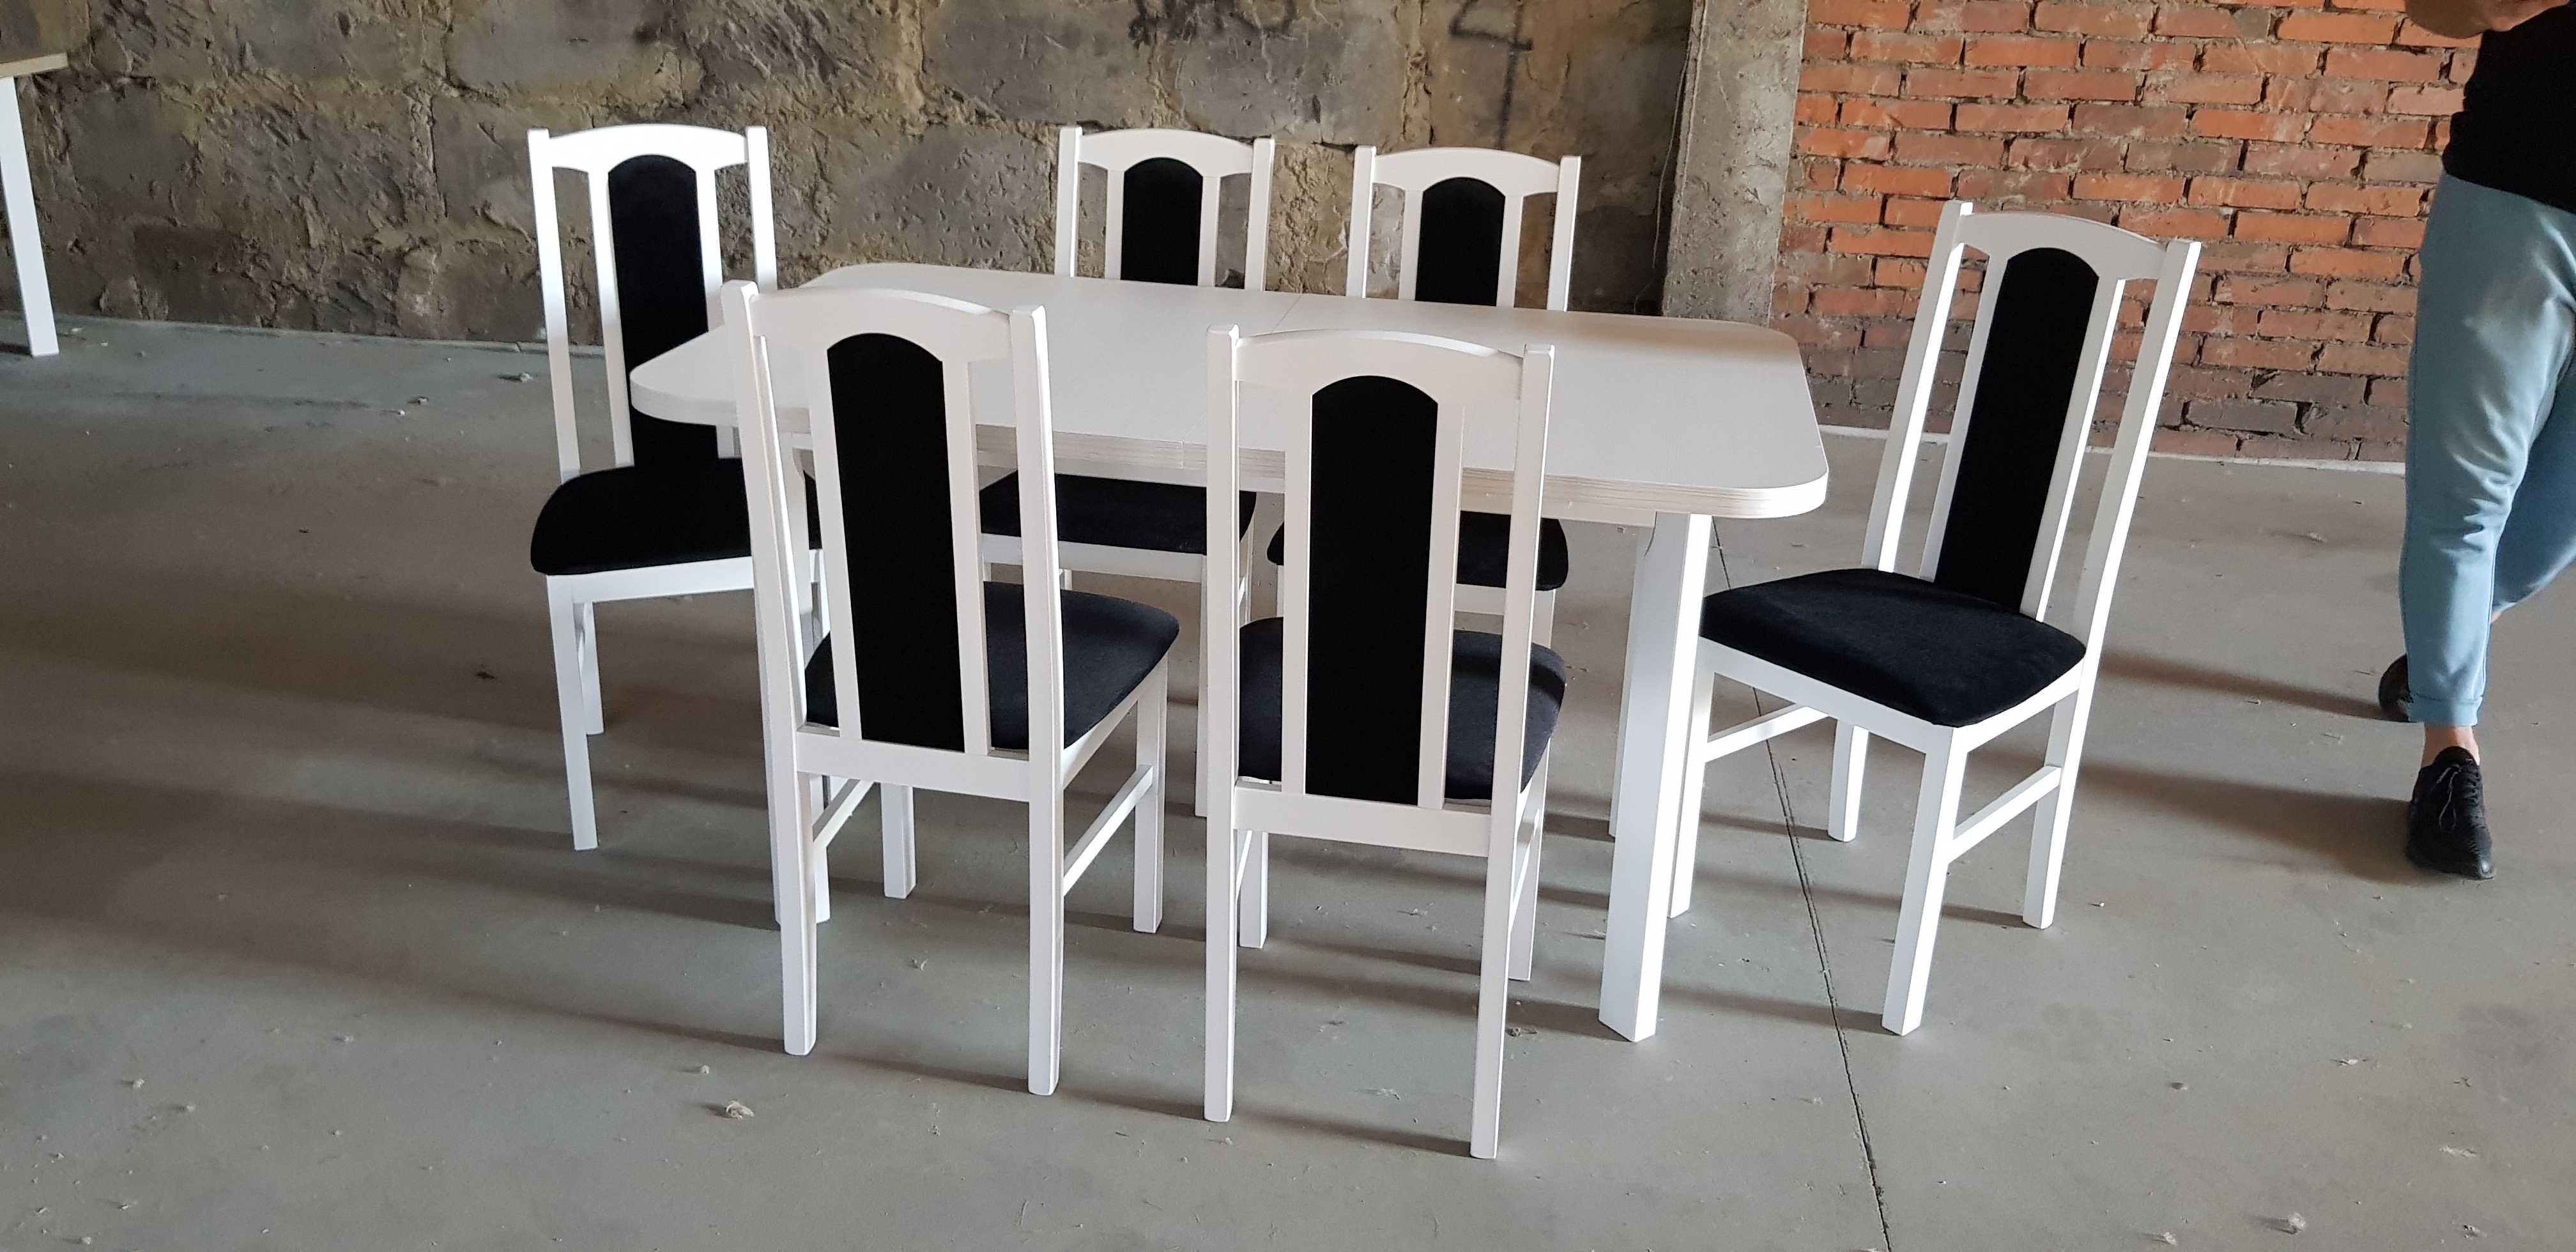 Nowe: Stół 80x140/180 + 6 krzeseł , BIAŁY + CZARNY , dostawa cała PL